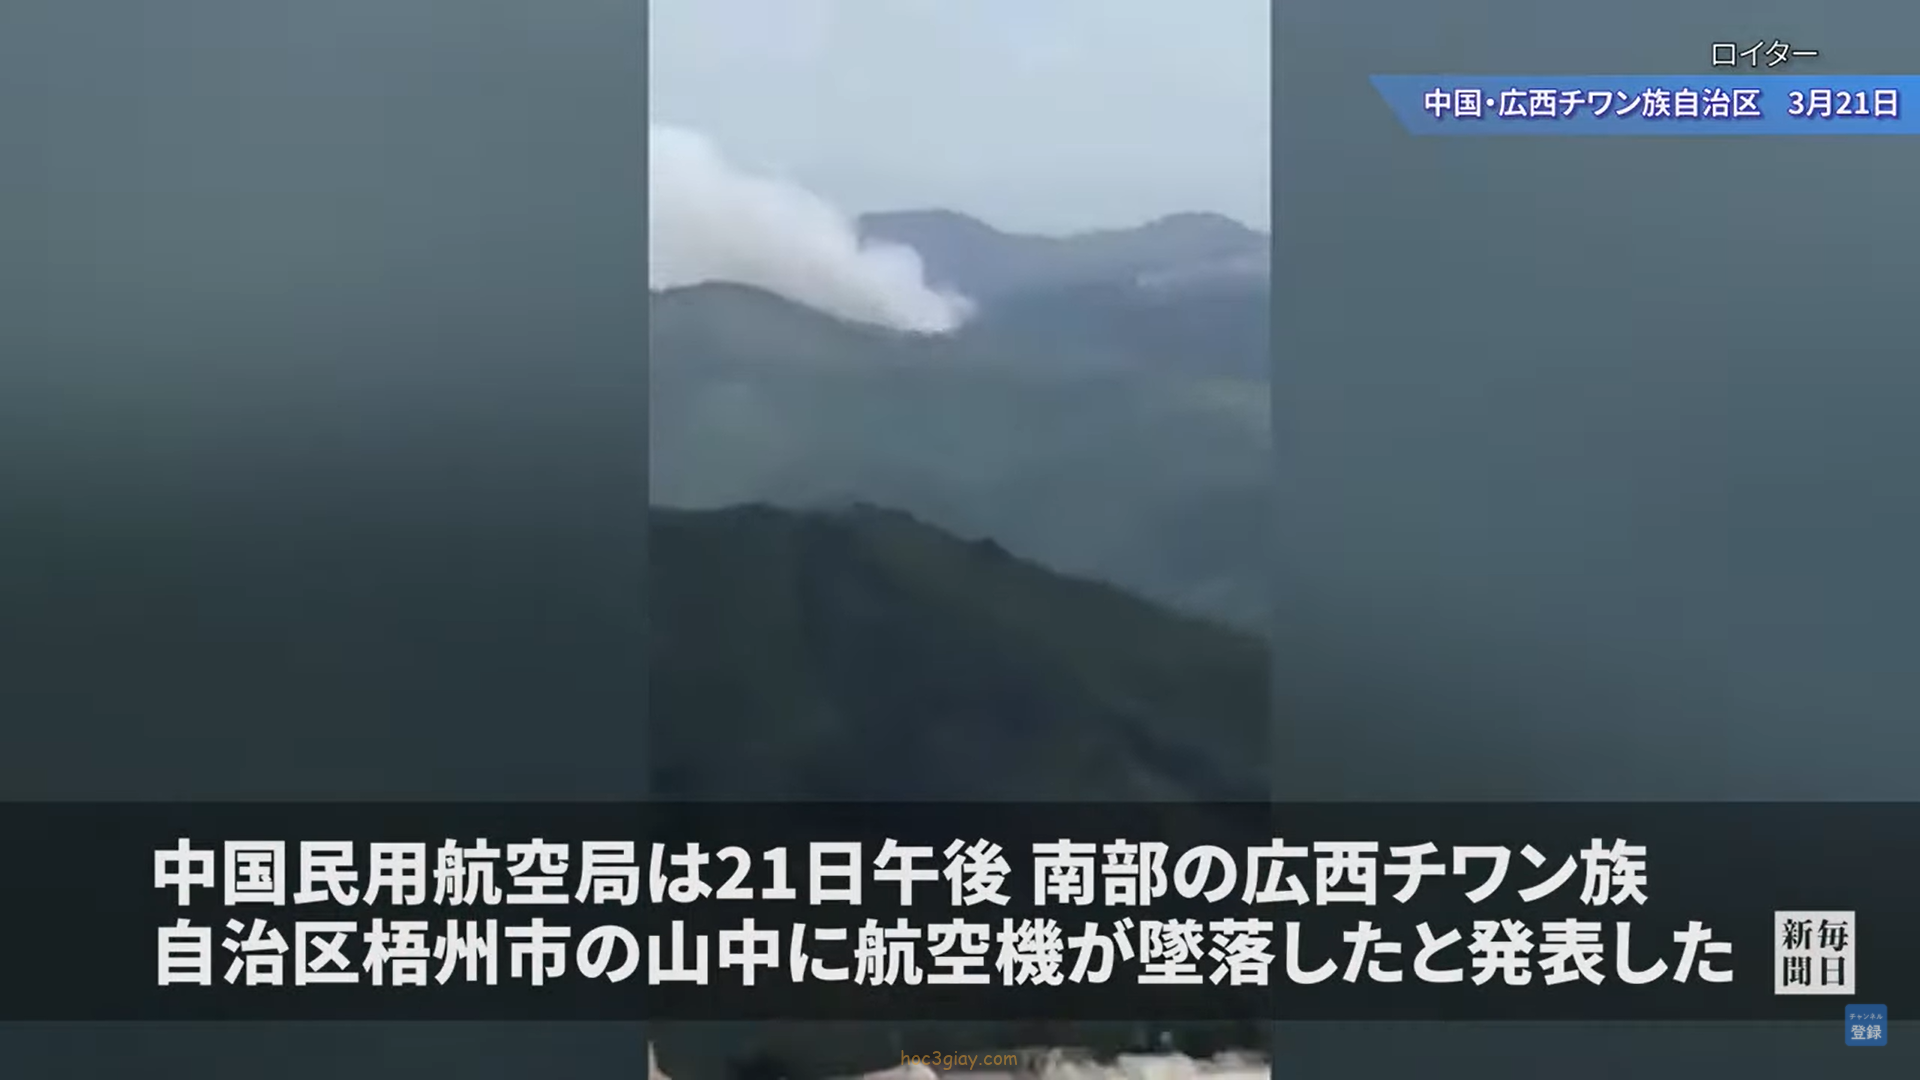 Máy bay với 132 hành khách gặp nạn ở miền nam Trung Quốc bị nhà chức trách hàng không Trung Quốc thông báo